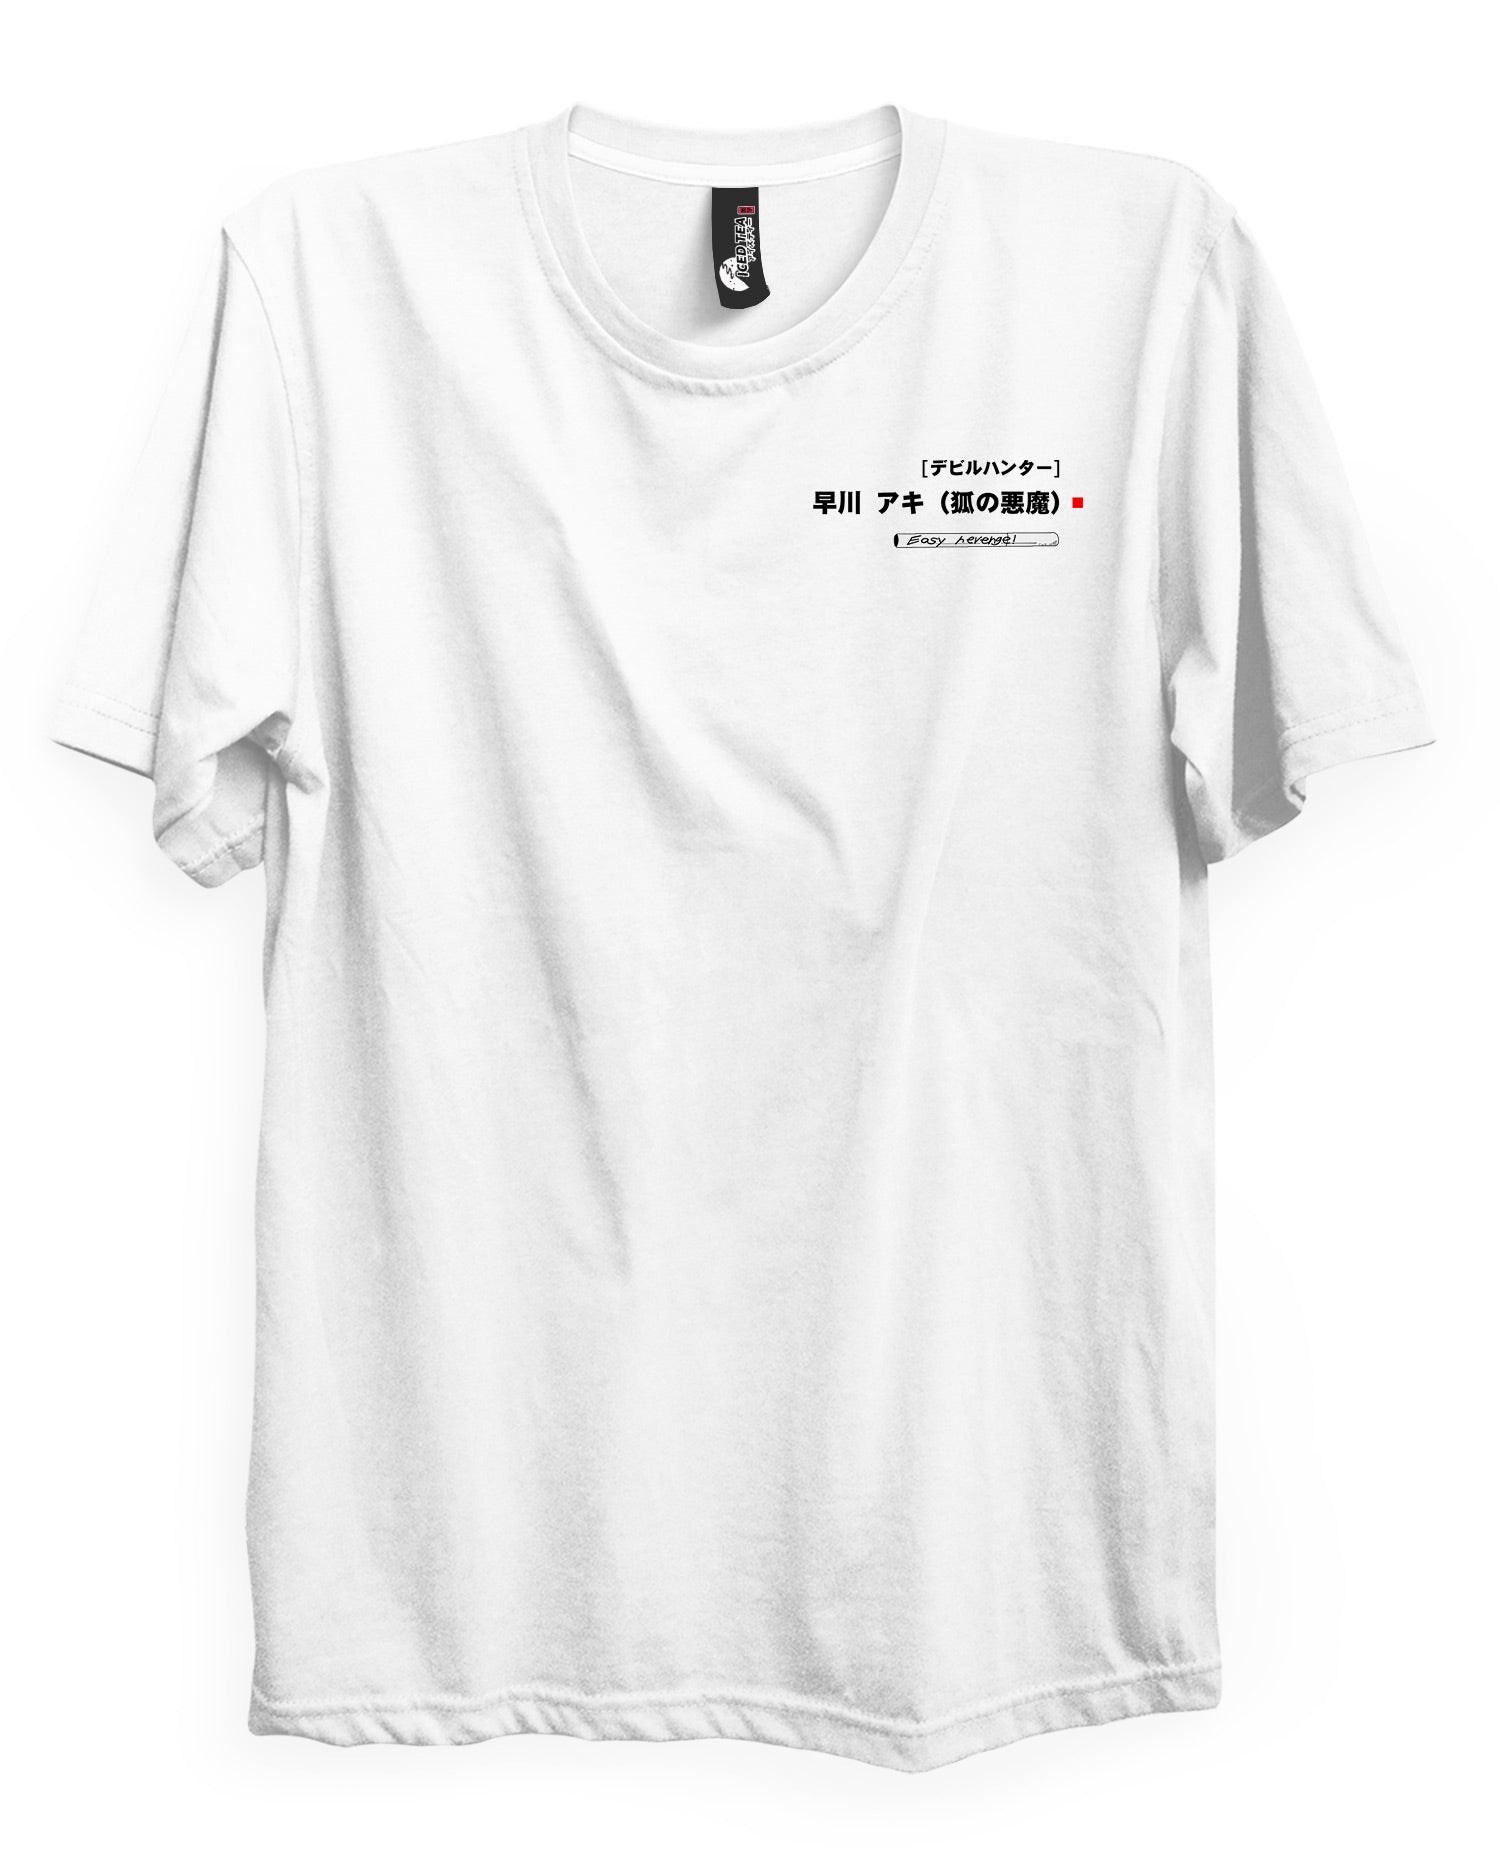 AKI (Easy Revenge) - T-Shirt Back Print